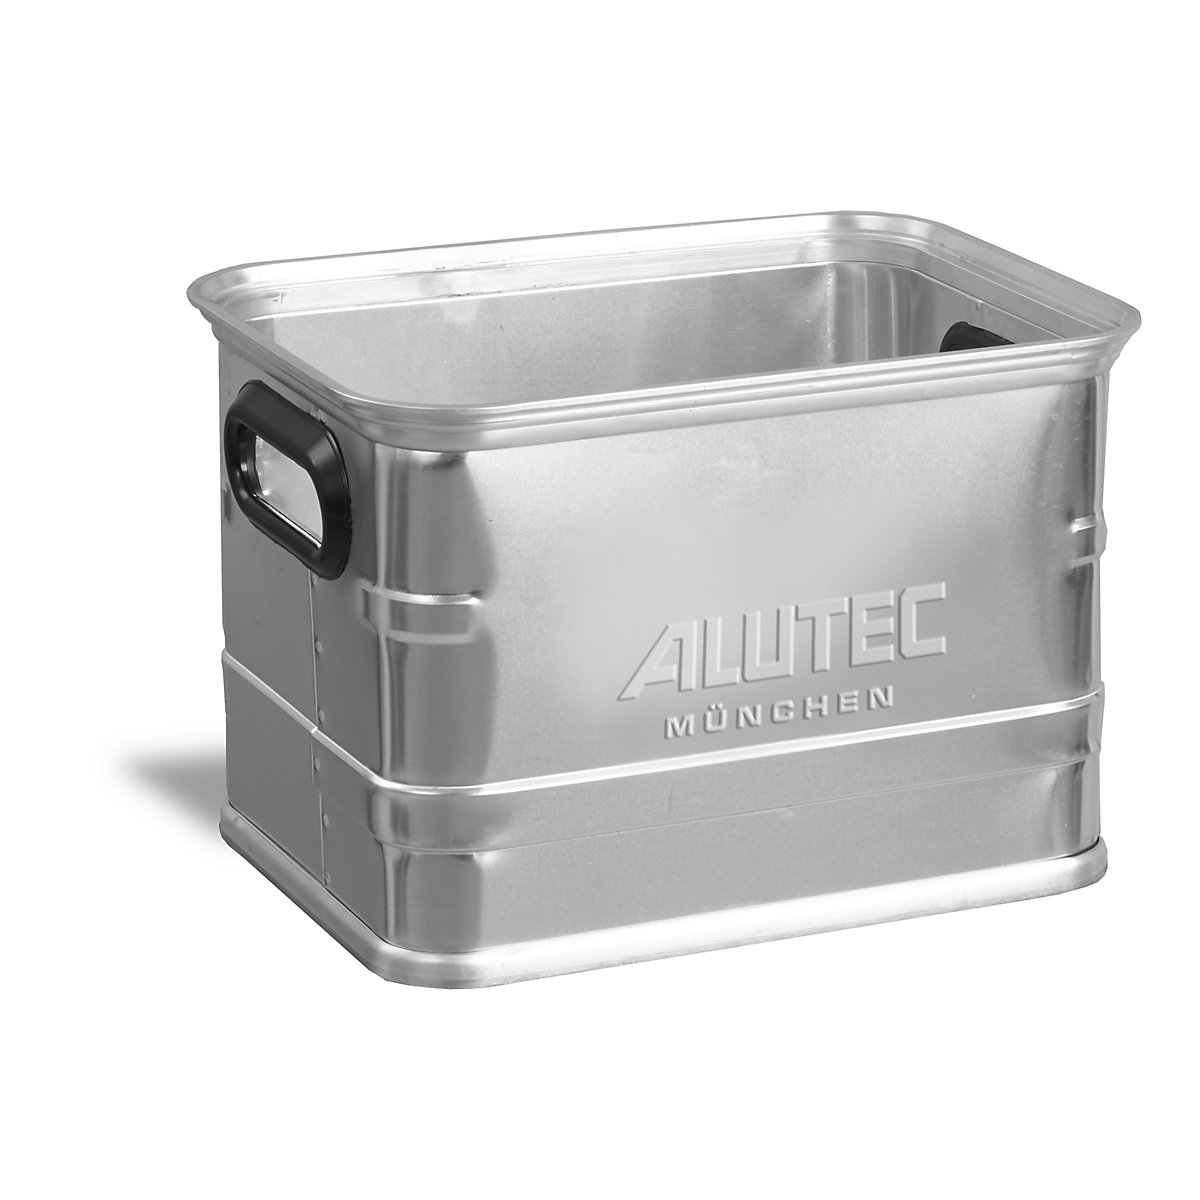 Caja de transporte de aluminio